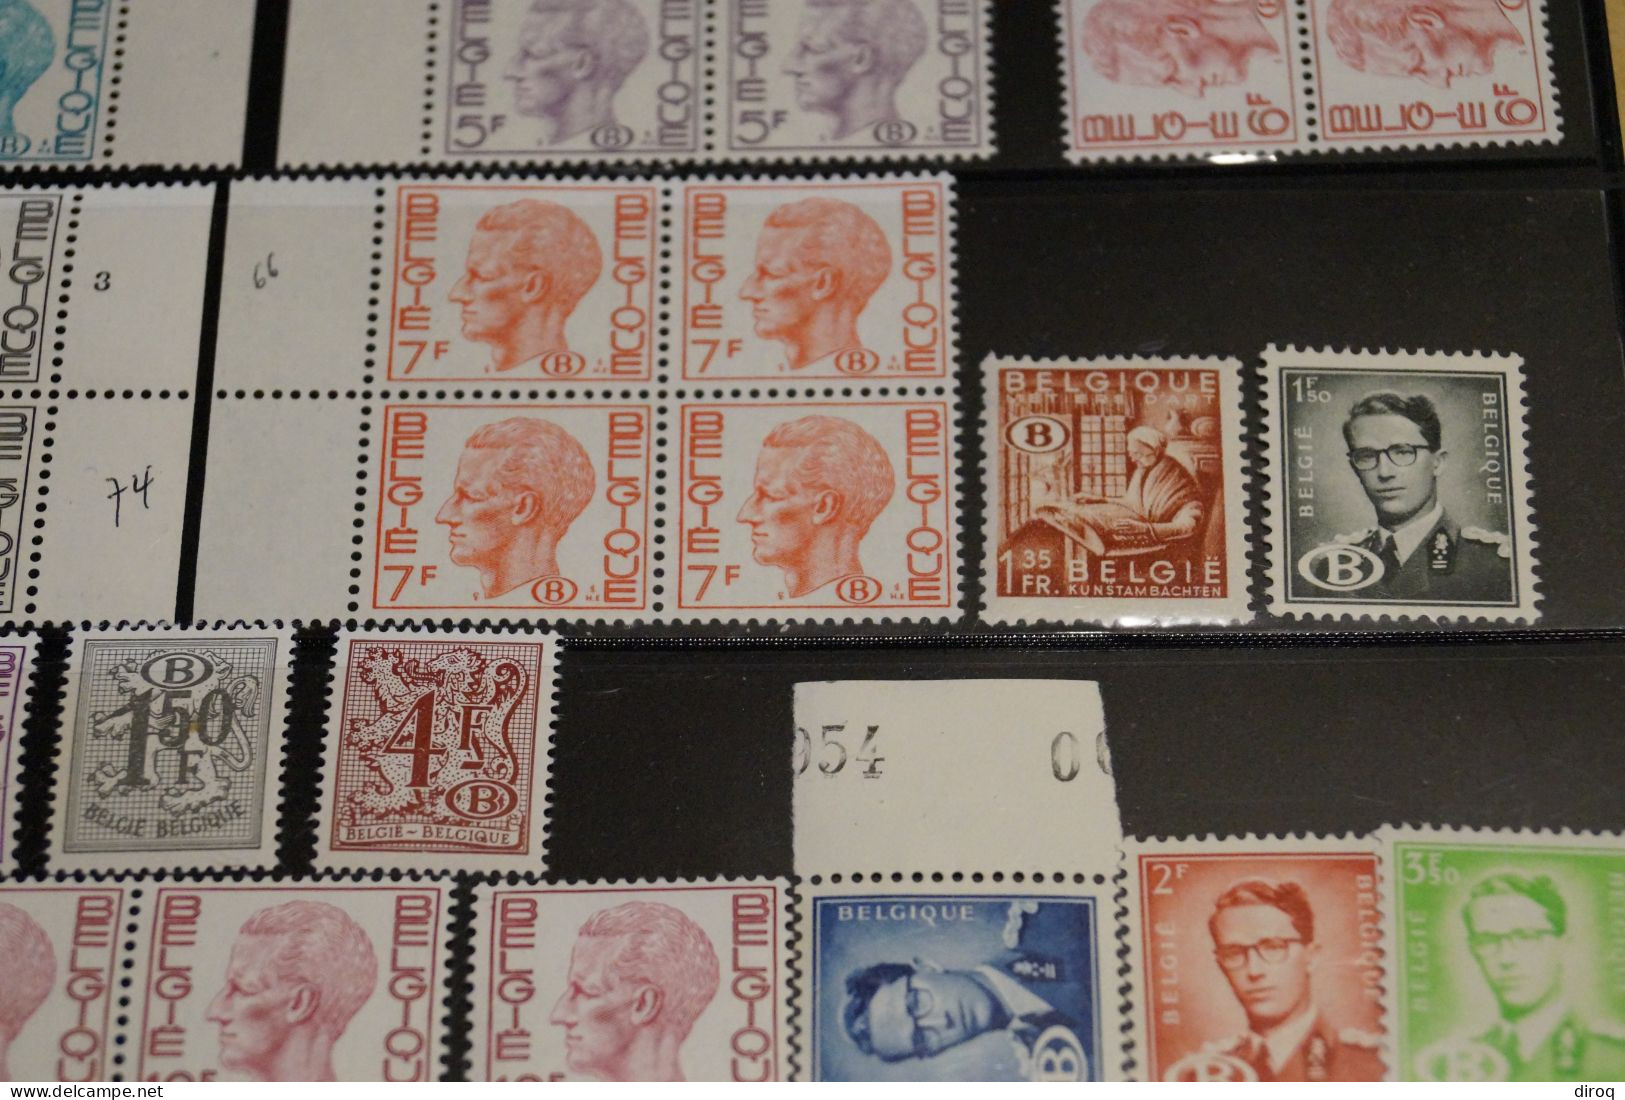 33 Timbres Neuf,Baudoin,chemin De Fer,superbe état Mint Pour Collection - Unused Stamps